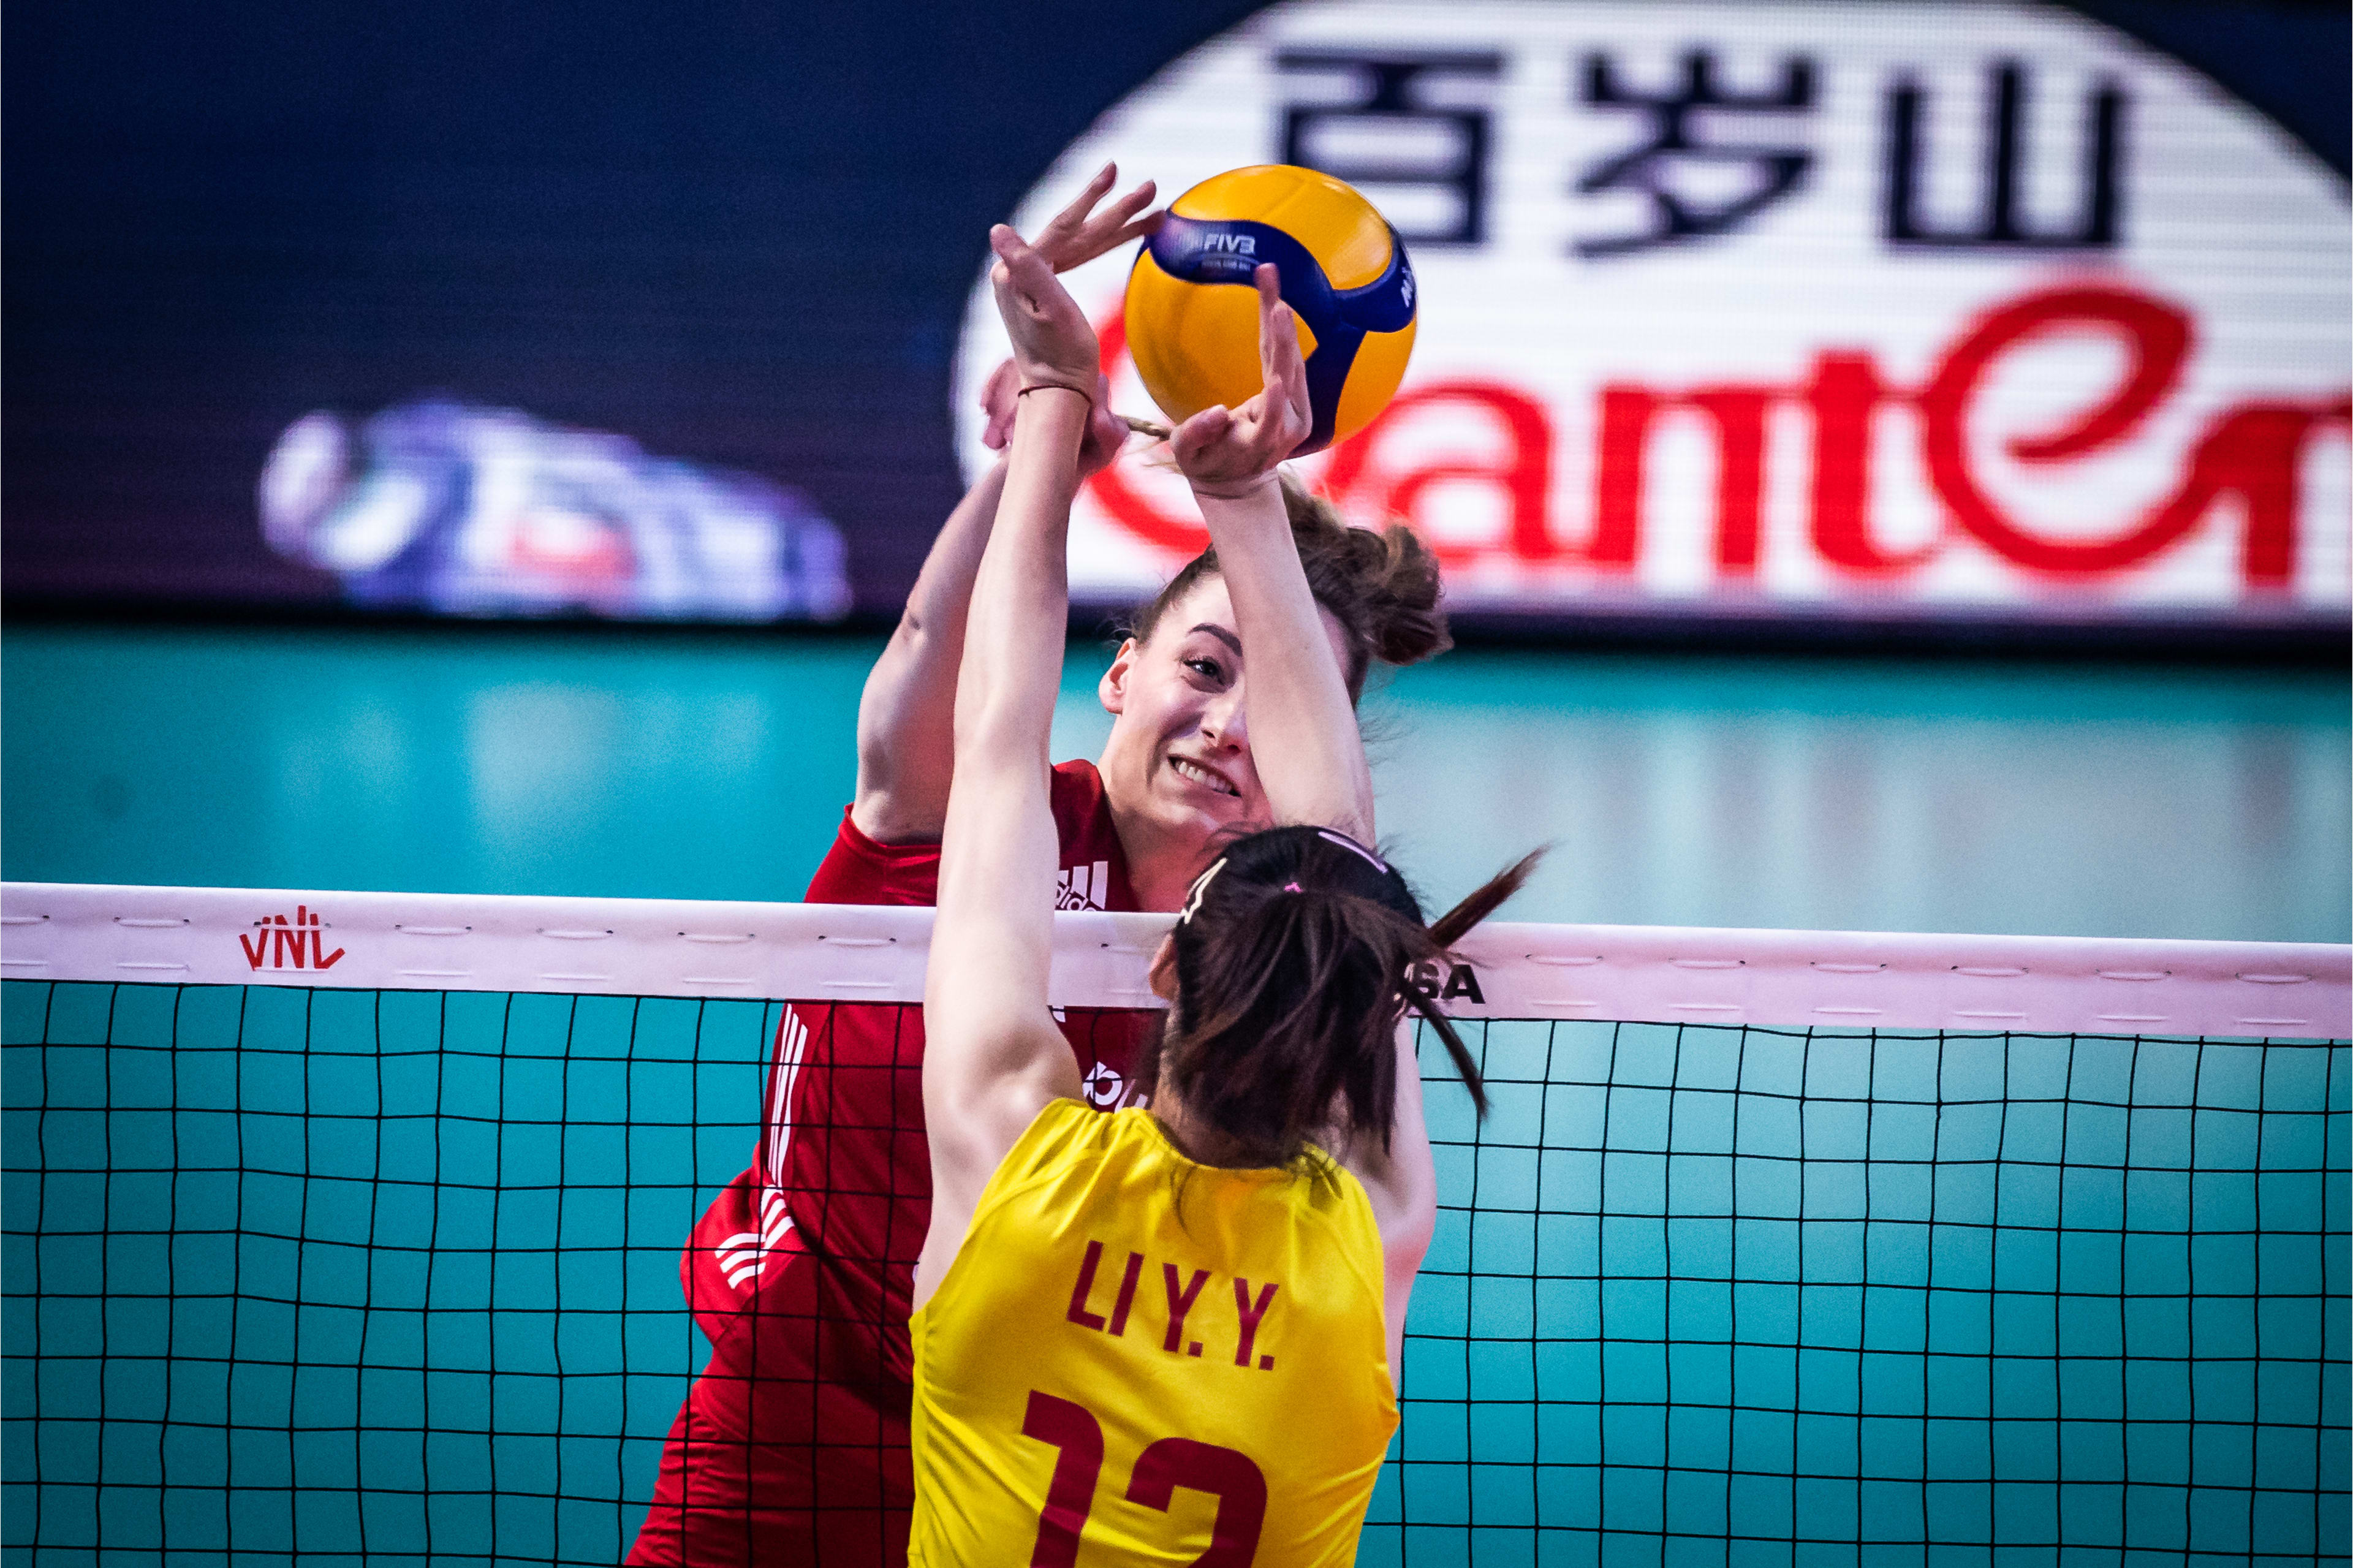 中国队|中国女排3-0横扫波兰，提前锁定总决赛席位！李盈莹18分全场最高